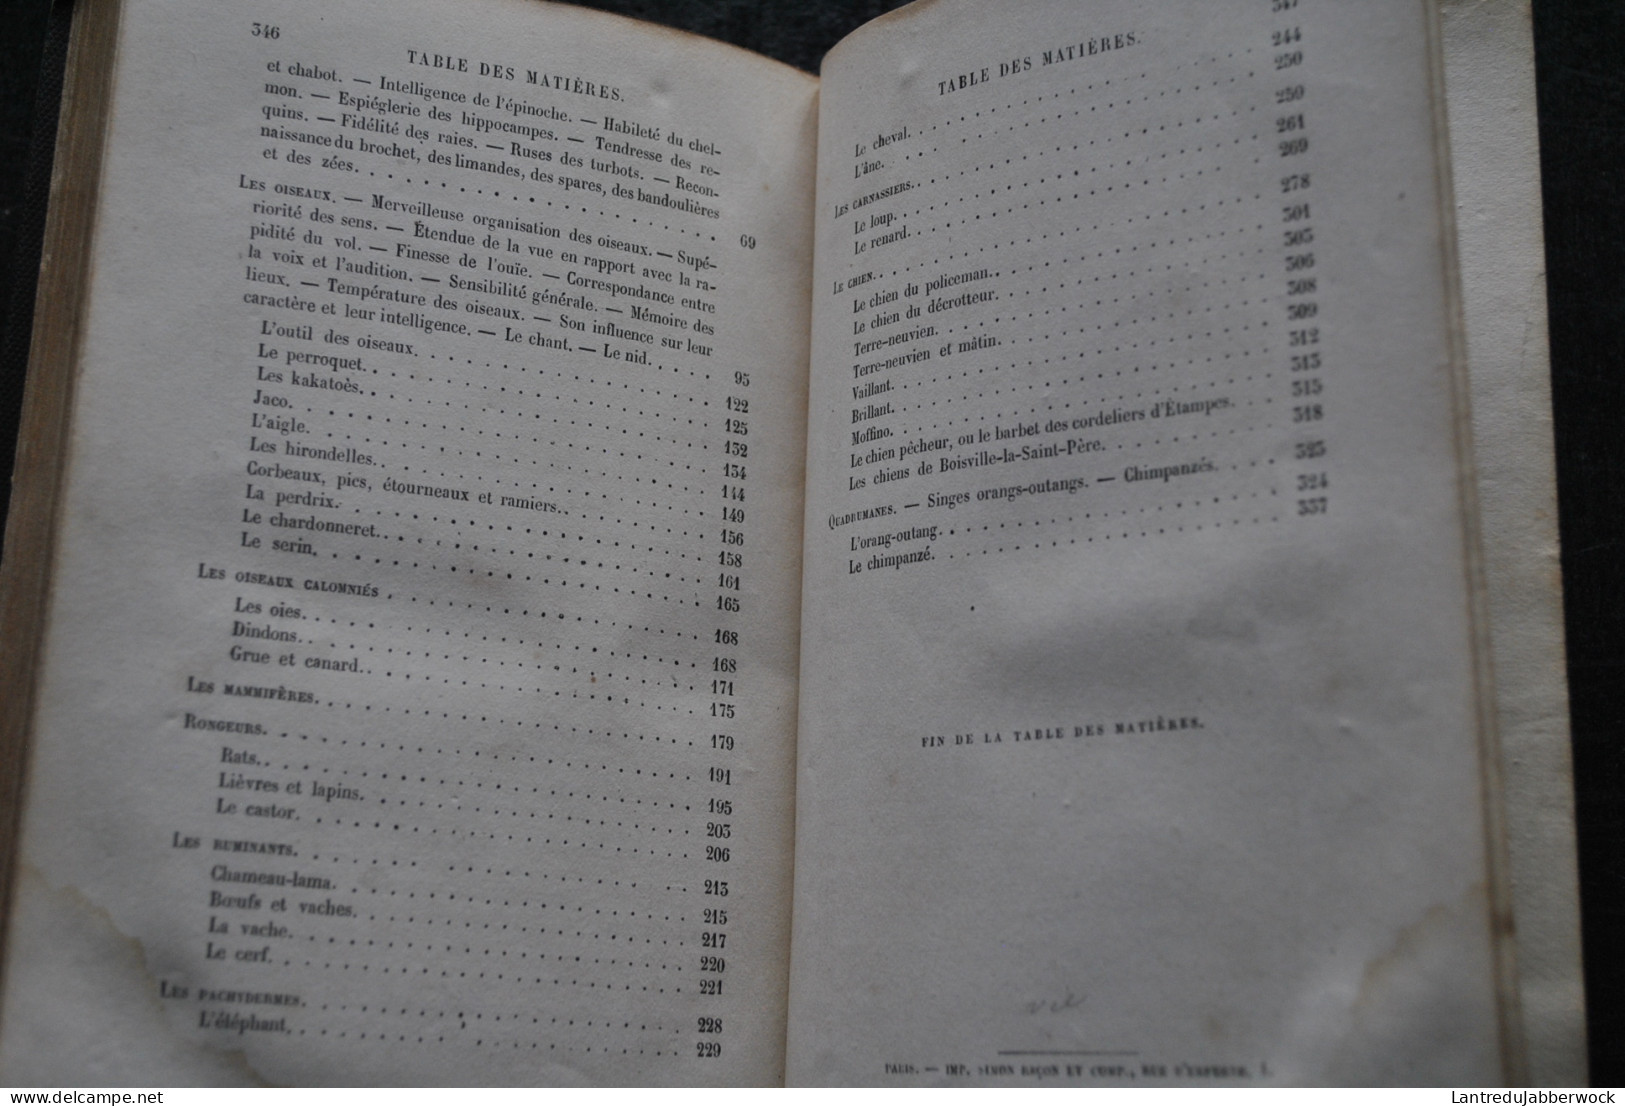 Ernest MENAULT L'INTELLIGENCE DES ANIMAUX Hachette 1868 Bibliothèque des Merveilles illustrations Bayard Mesnel gravures